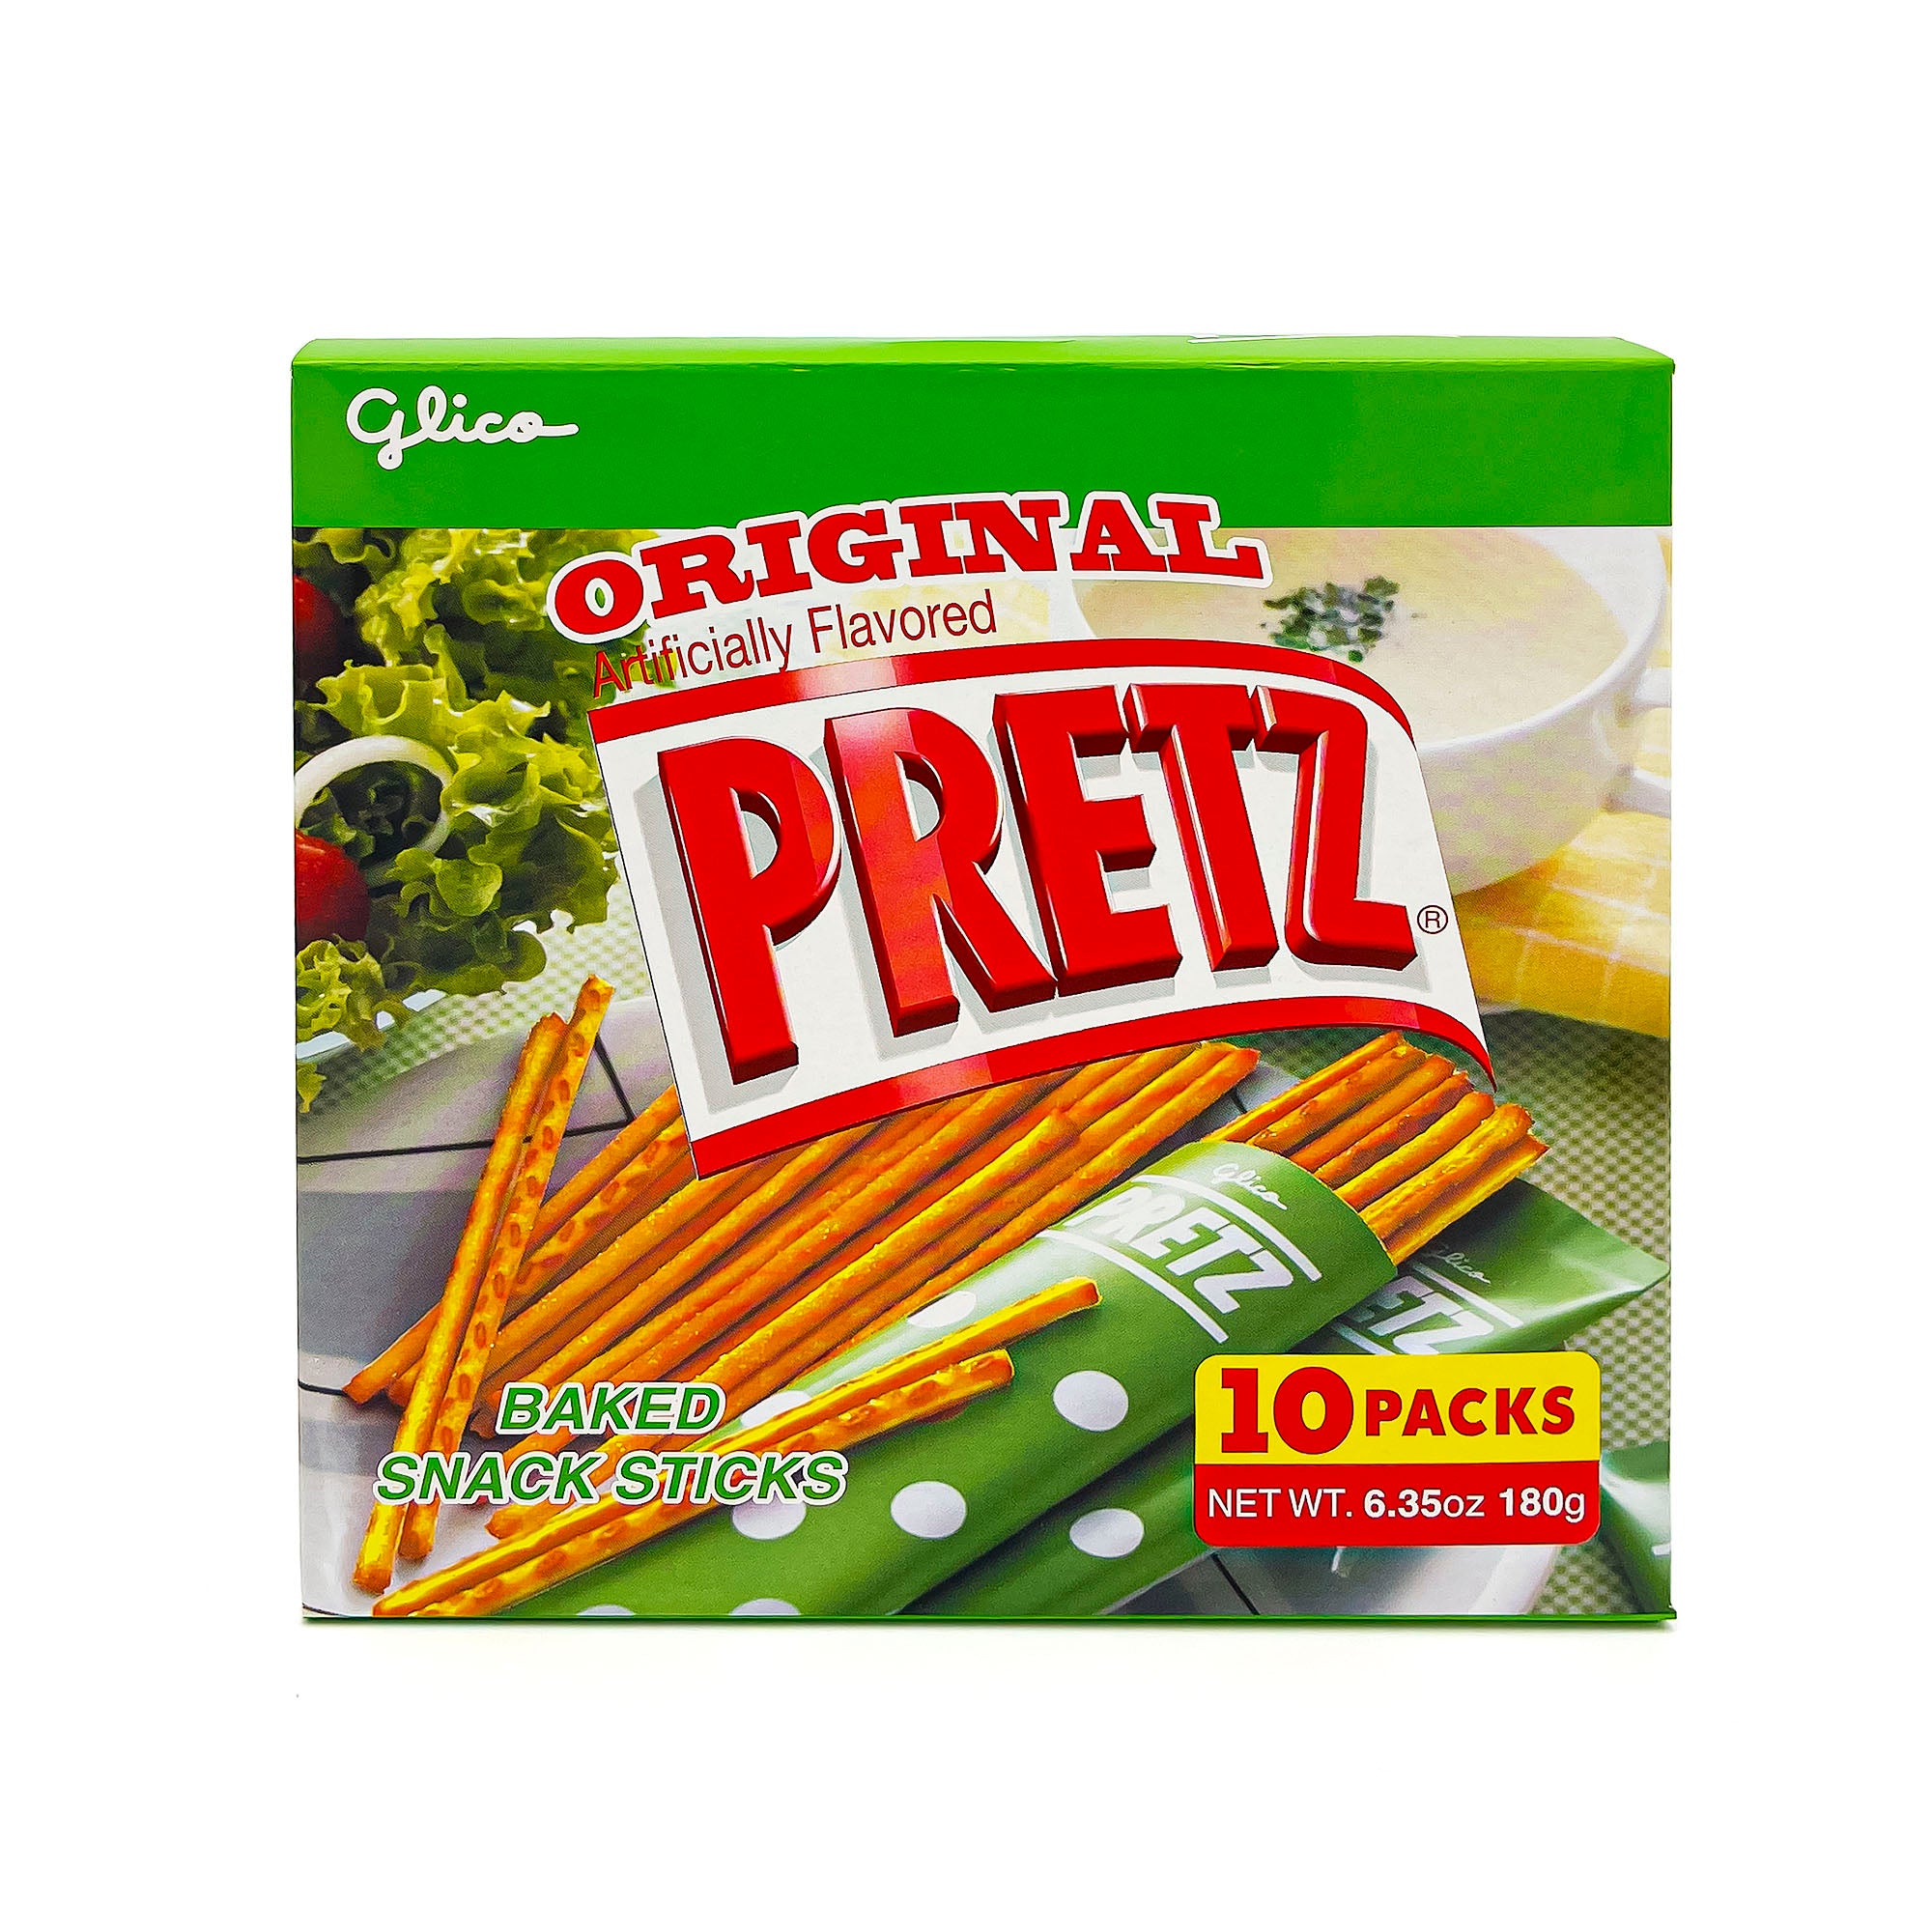 Glico Pretz Original Baked Snack Sticks, 10 packs